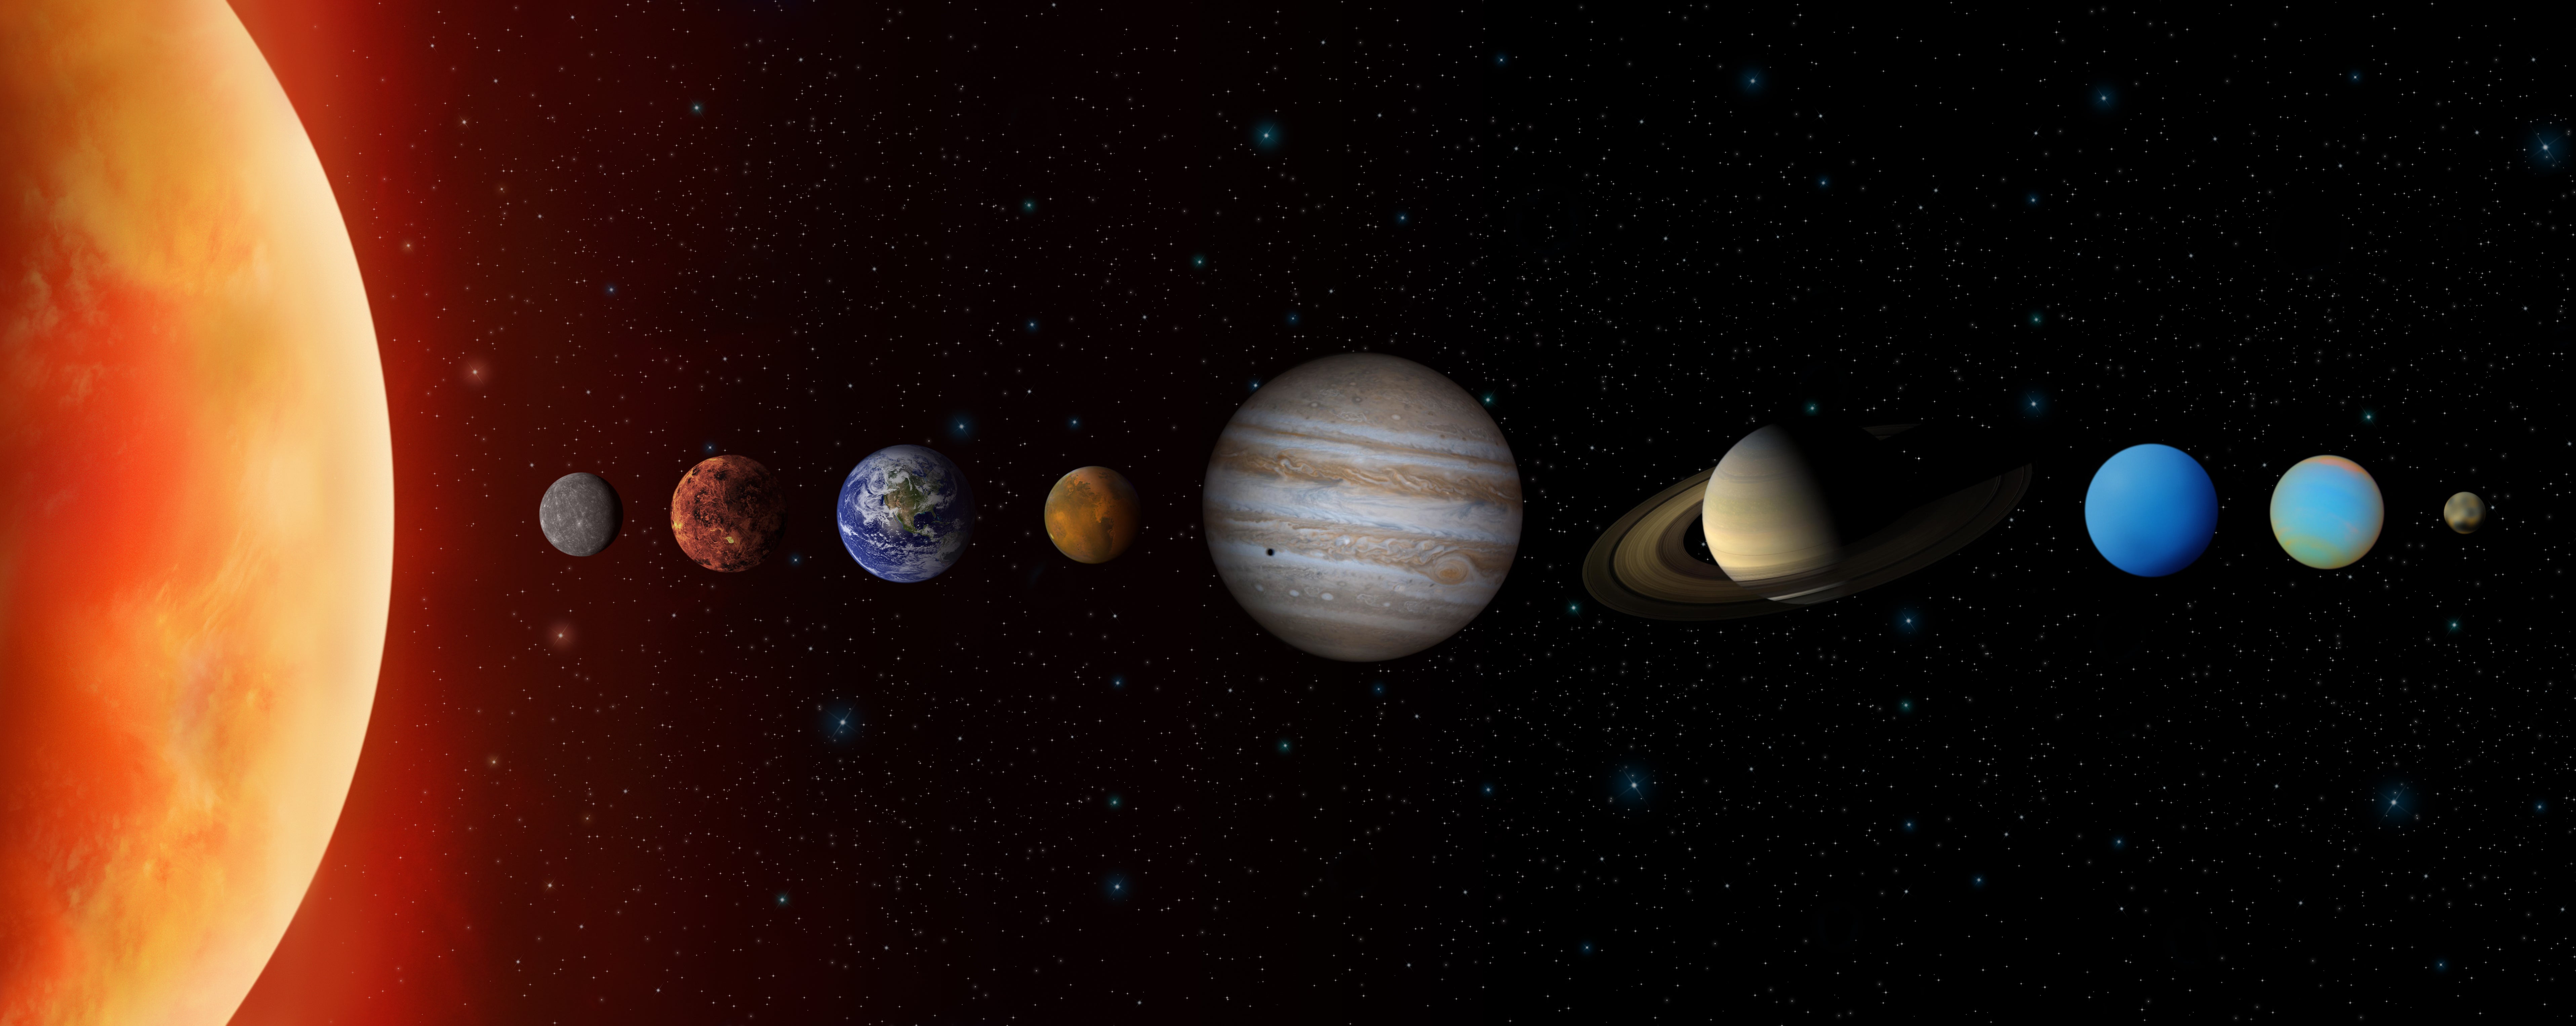 Una representación gráfica de los planetas de nuestro Sistema Solar según su distancia con el sol